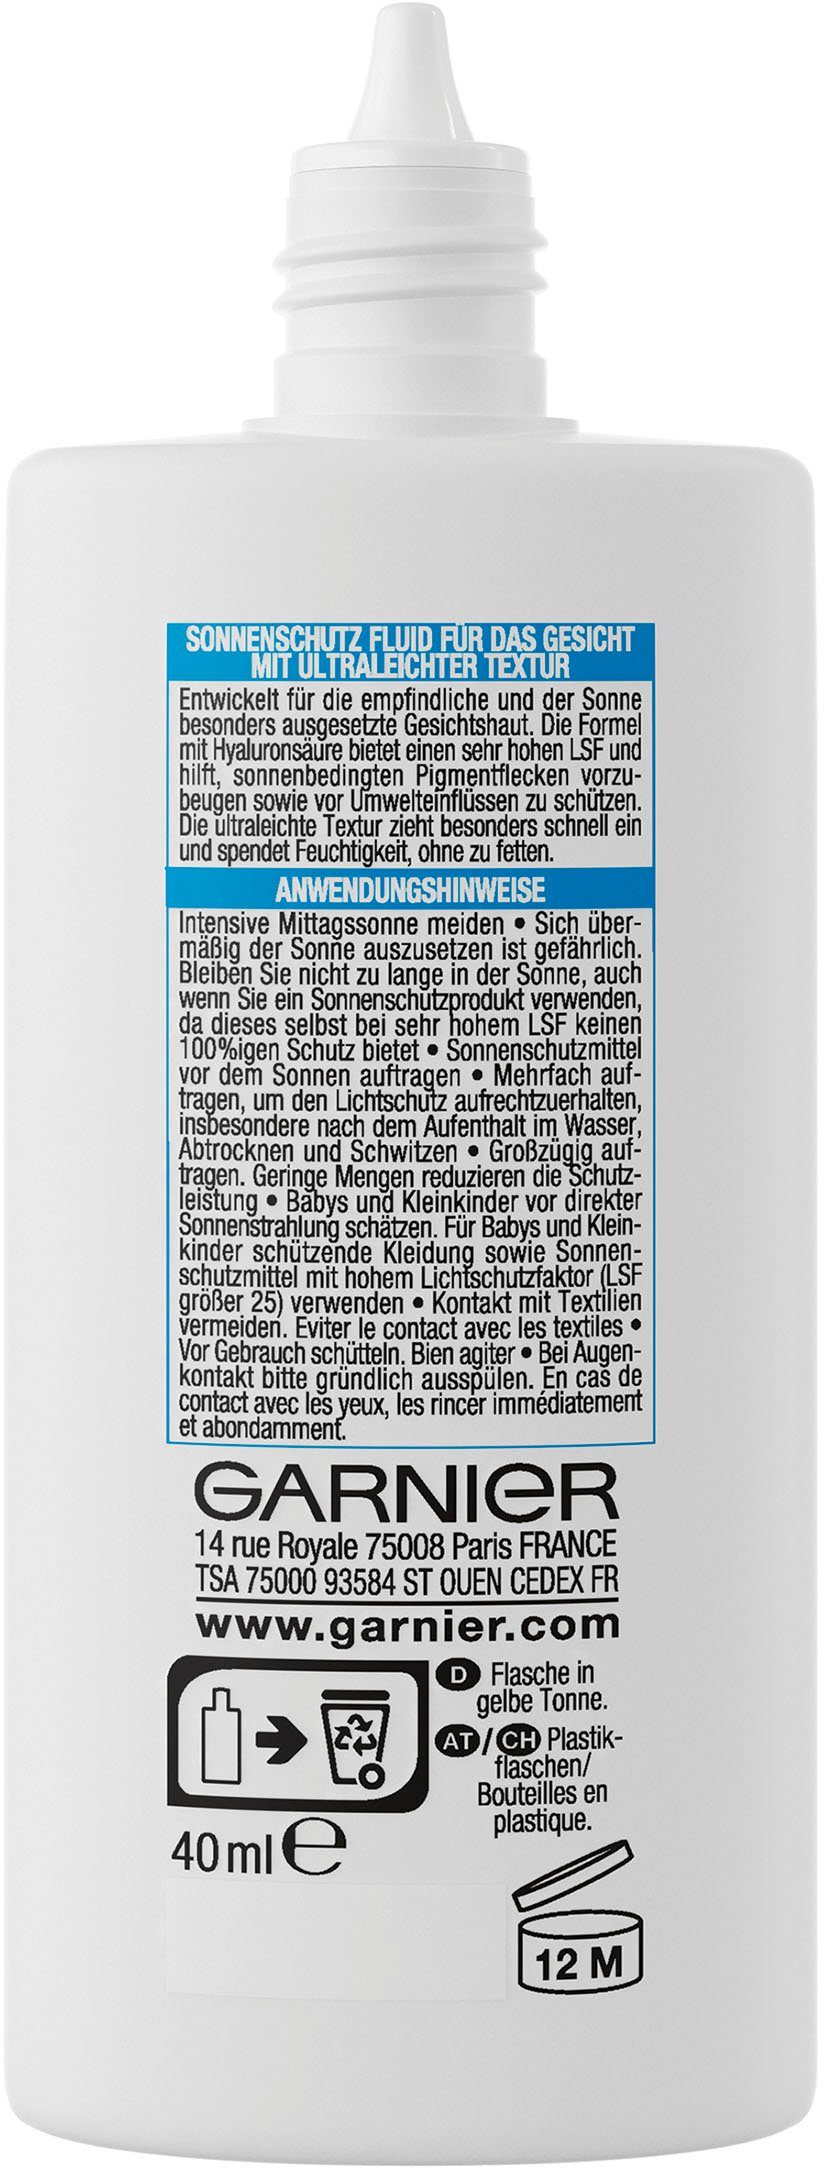 GARNIER expert+, Sonnenschutzfluid Solaire Ambre Sensitive LSF 50 mit Hyaluronsäure